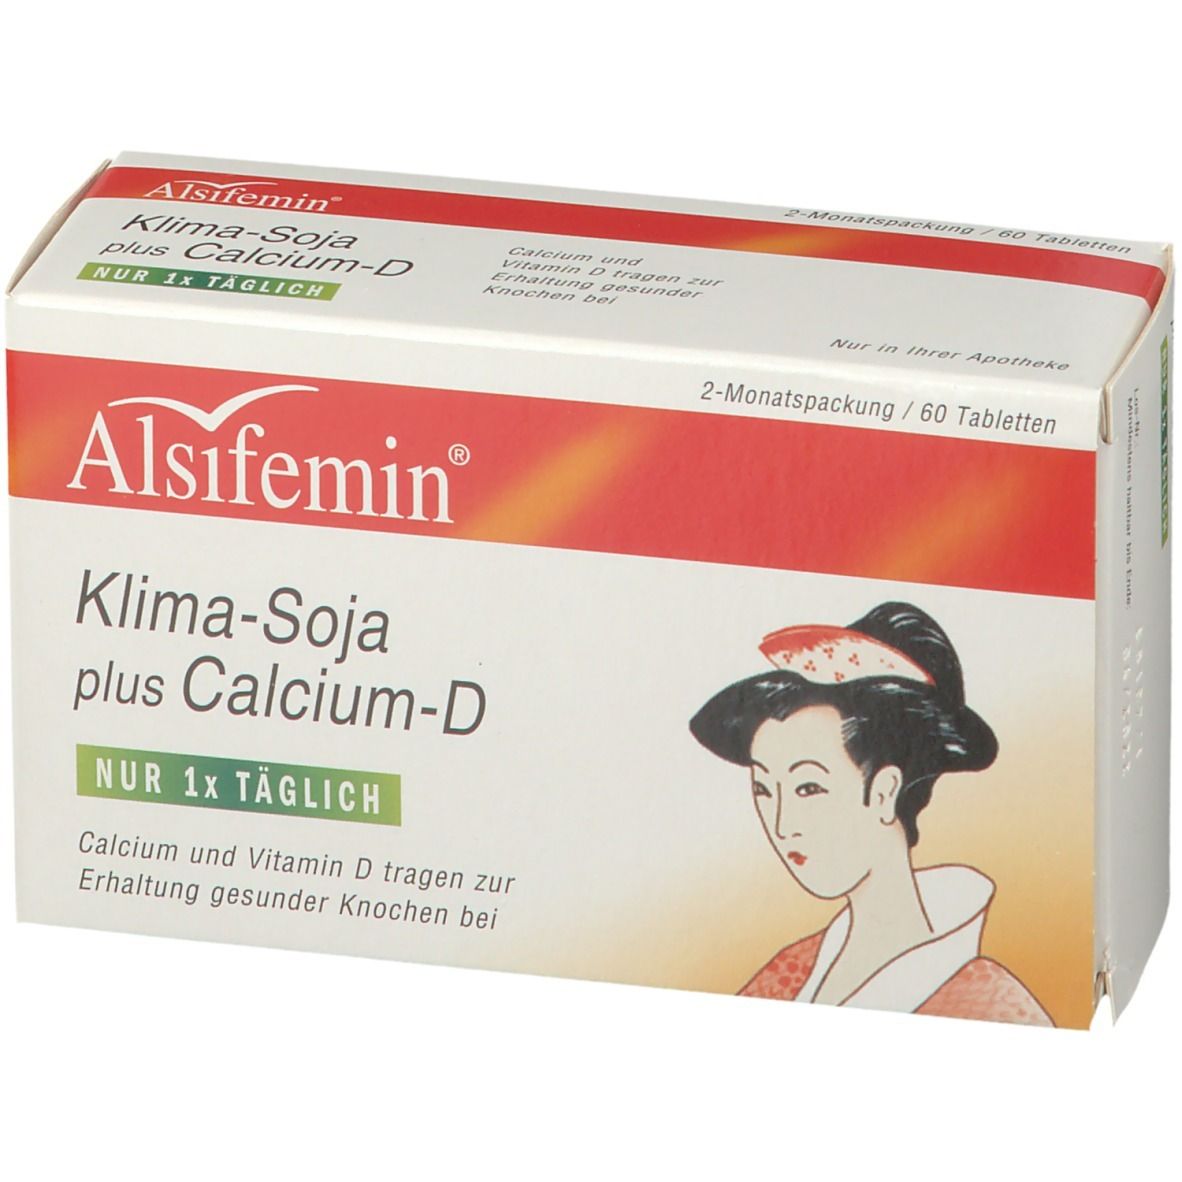 Alsifemin® Climat soja plus calcium D3